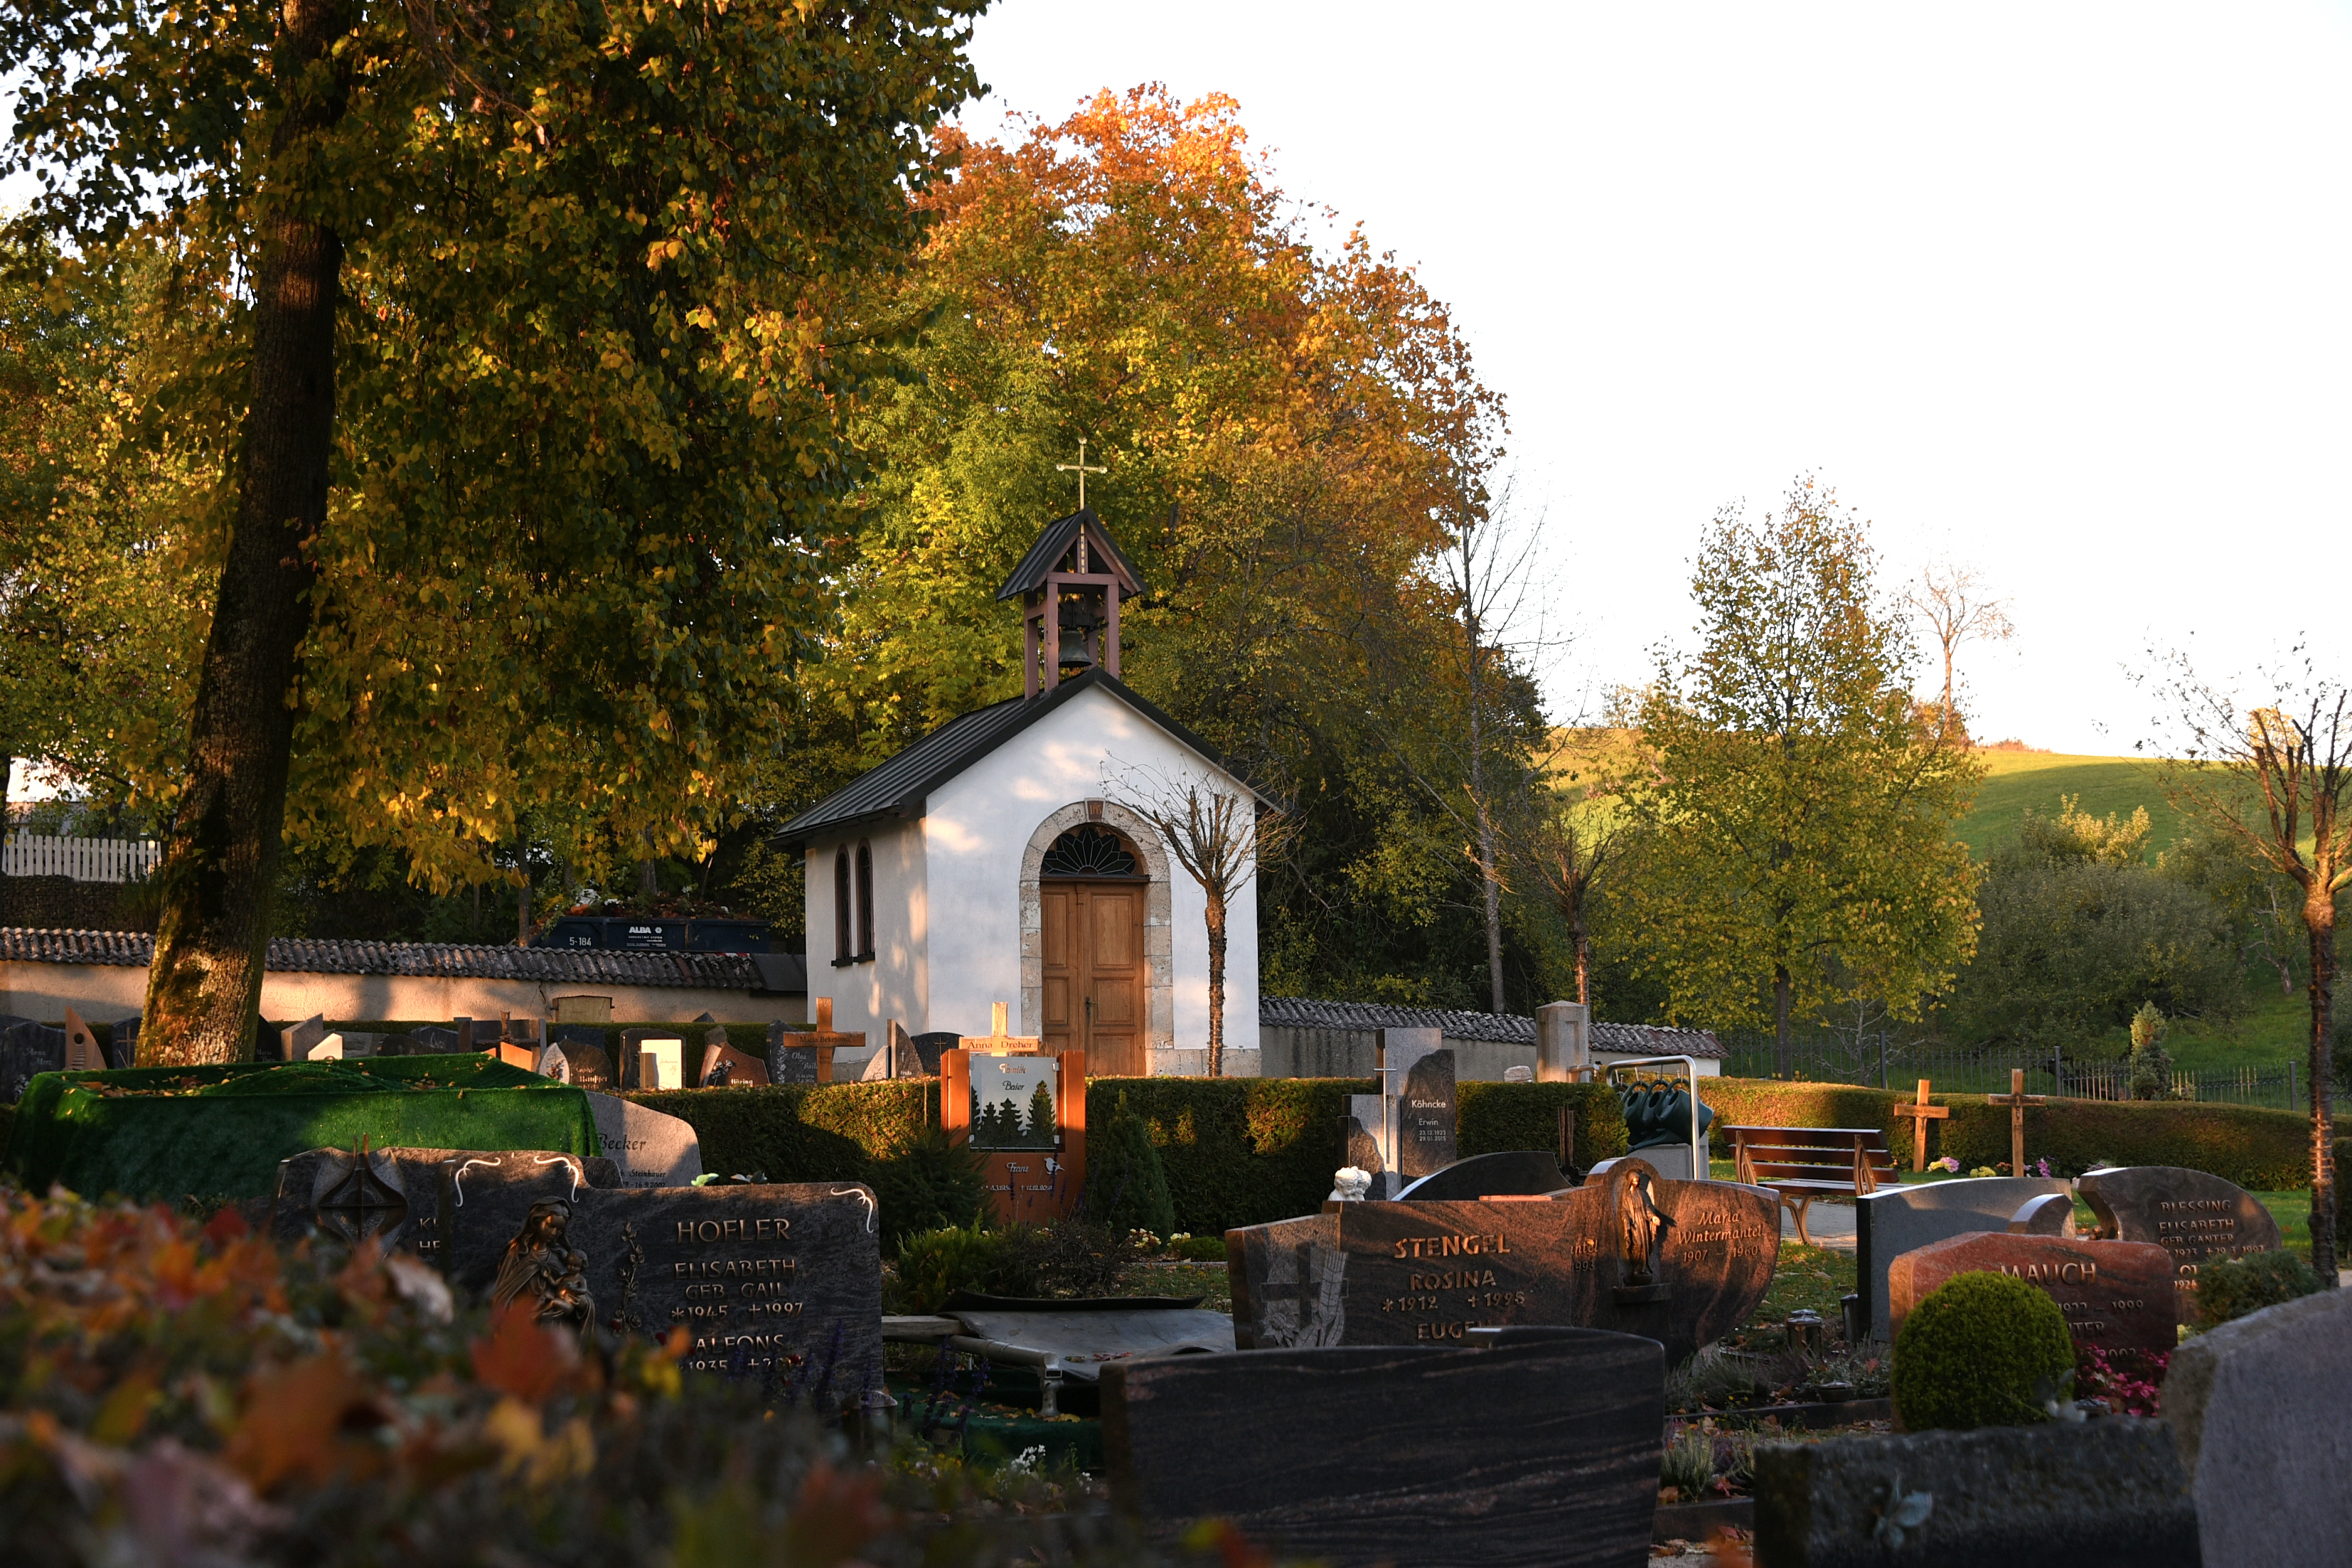 Bild vom Teil des Friedhofs mit Gräbern im Vordergrund und der Kapelle im Hintergrund